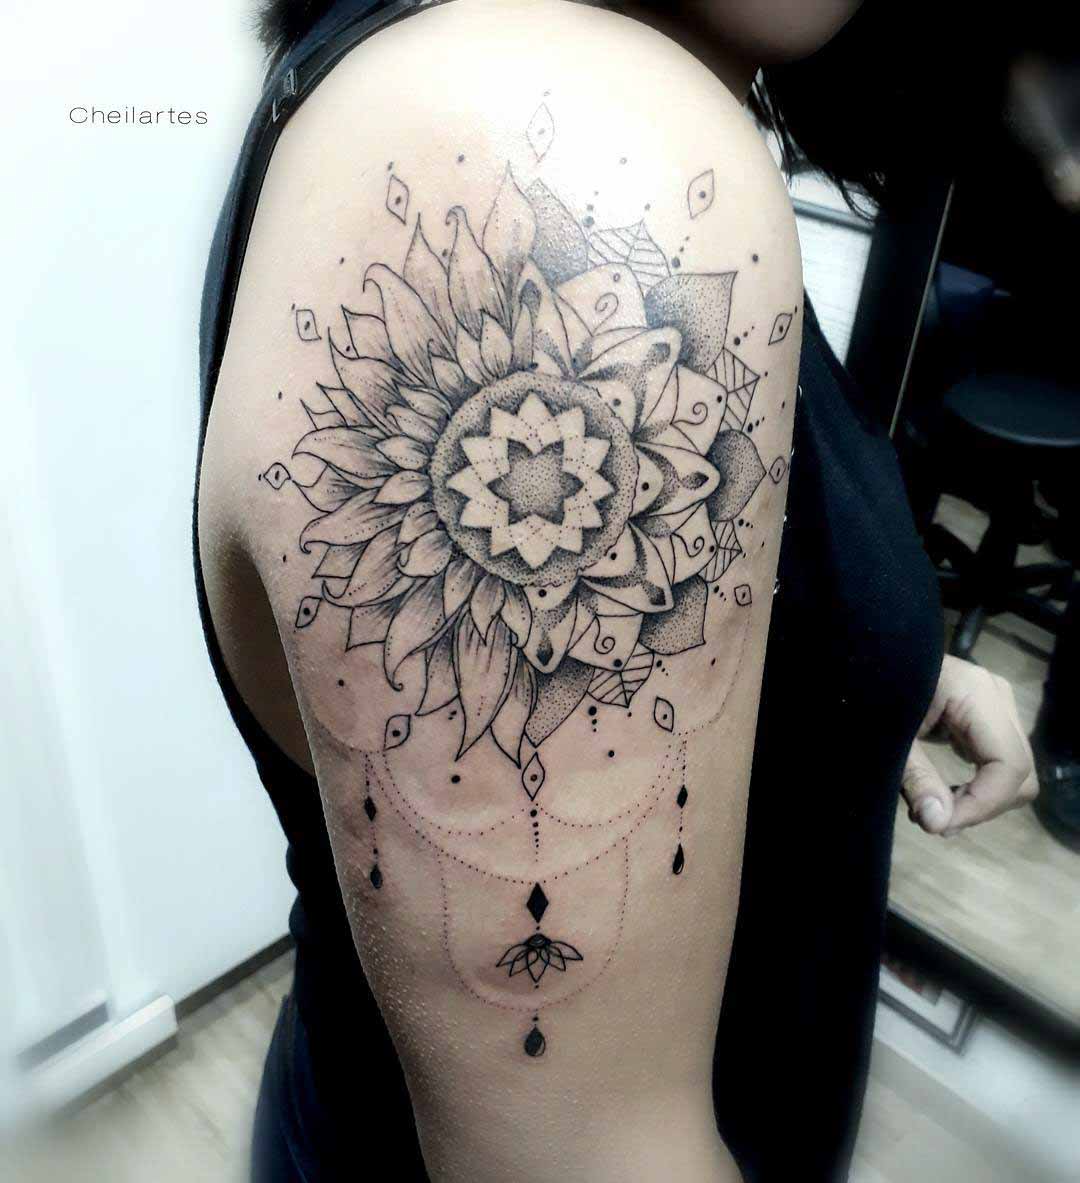 Stechfrequenz Tattoos  Sunflower Mandala Knee  tattoos tattooing  mandala mandalatattoo sunflower knee kneetattoo summer flowers   Facebook